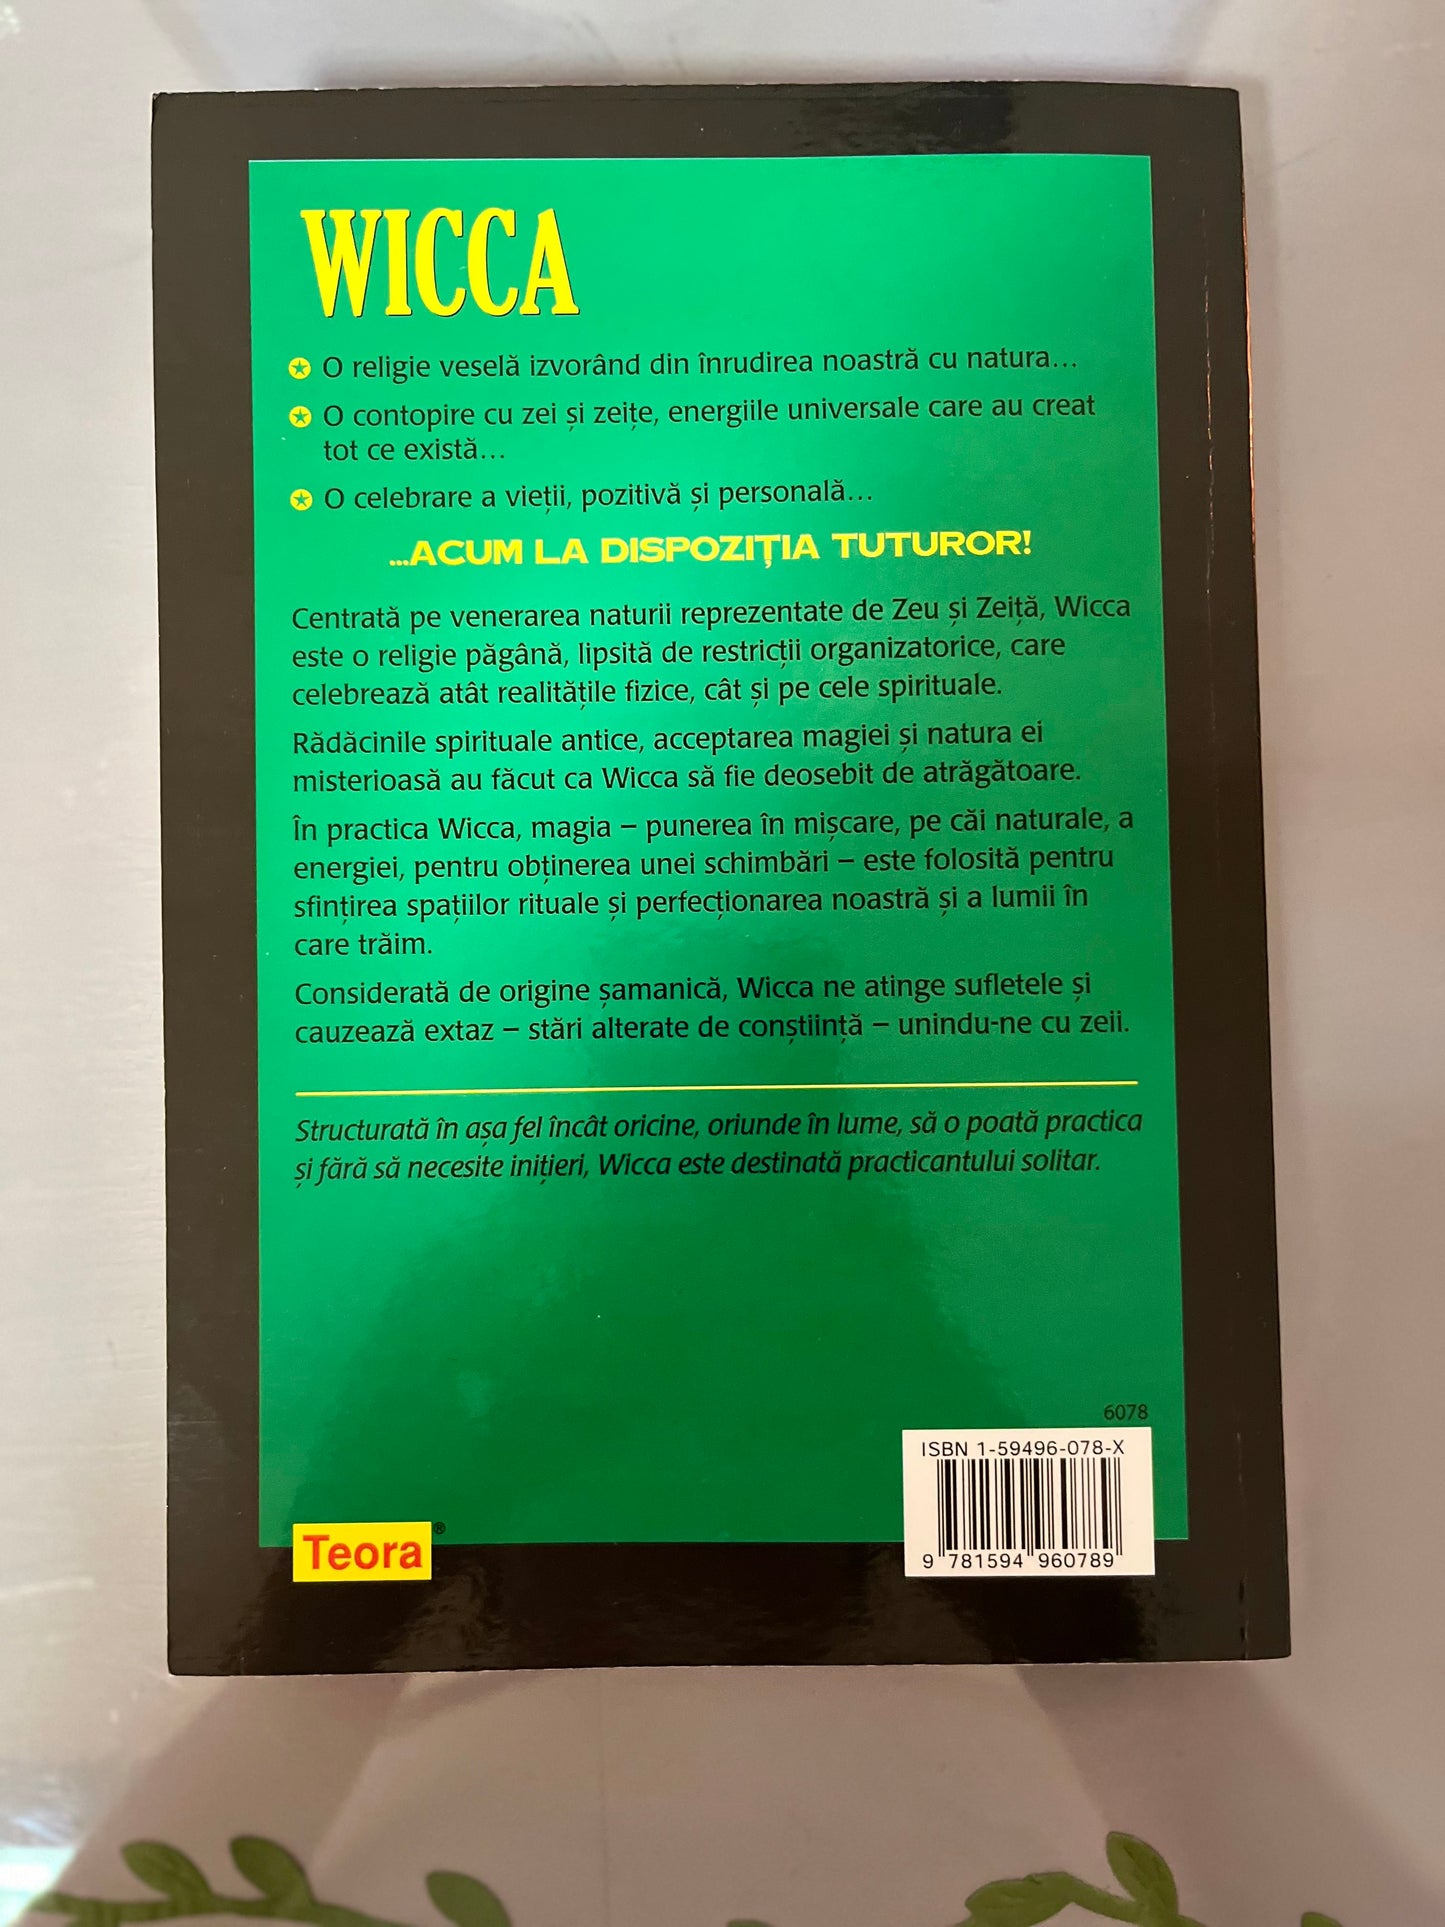 WICCA - Initiation Manual - Scott Cunningham